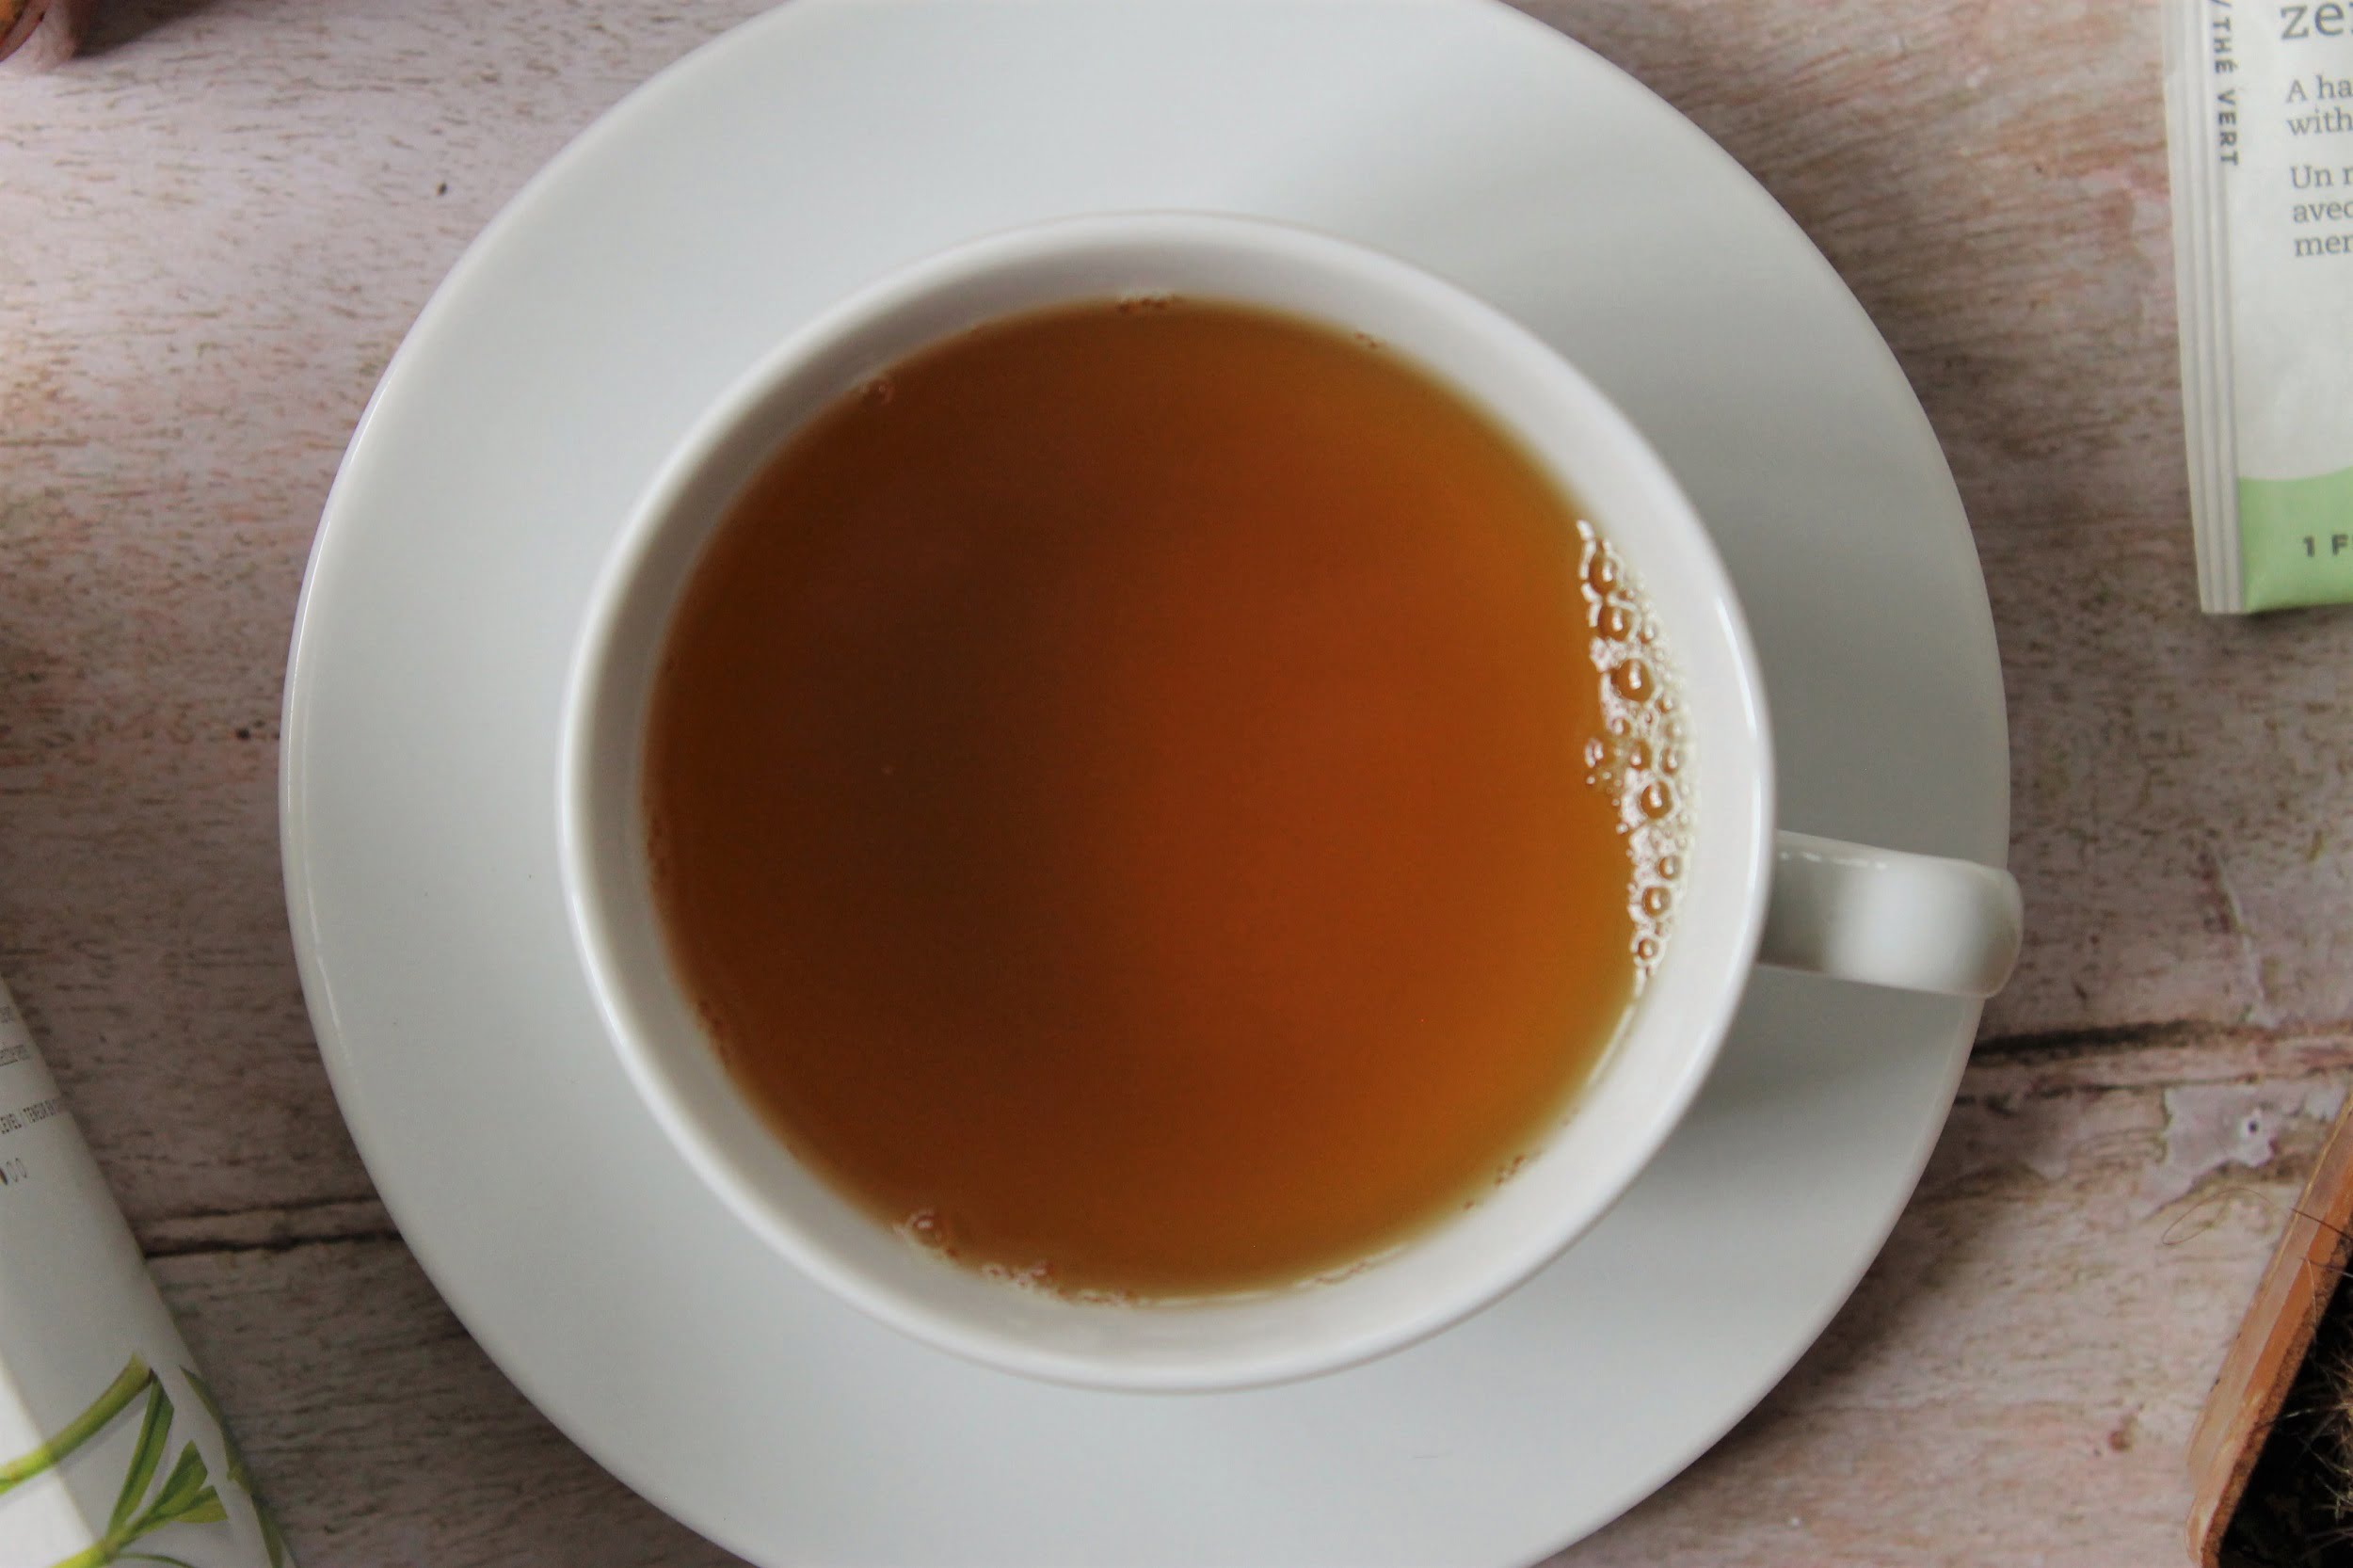 tazo zen tea in teacup